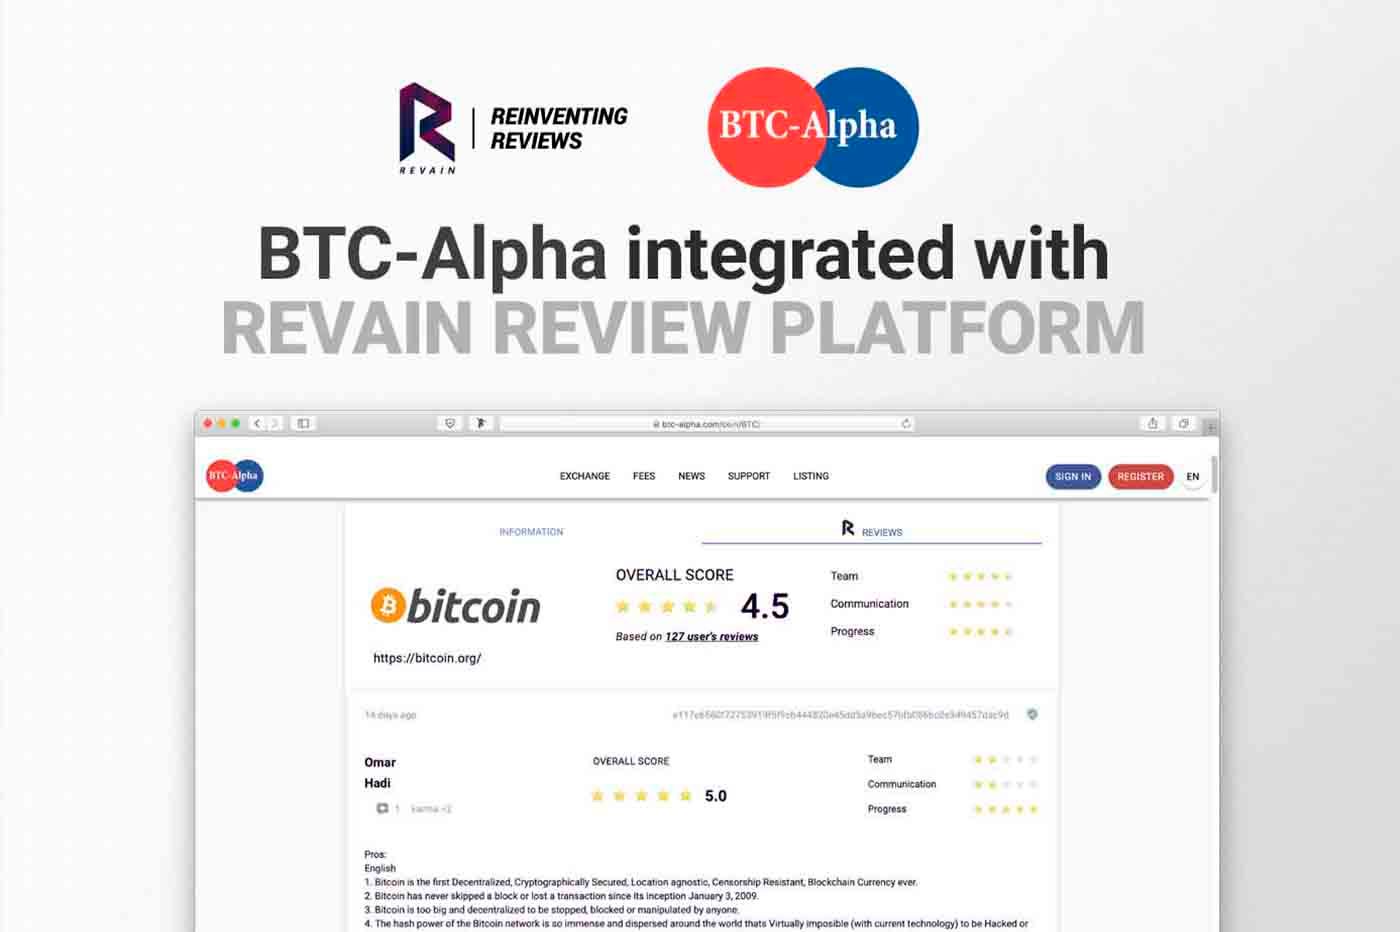 Revain integrates with BTC-Alpha exchange 